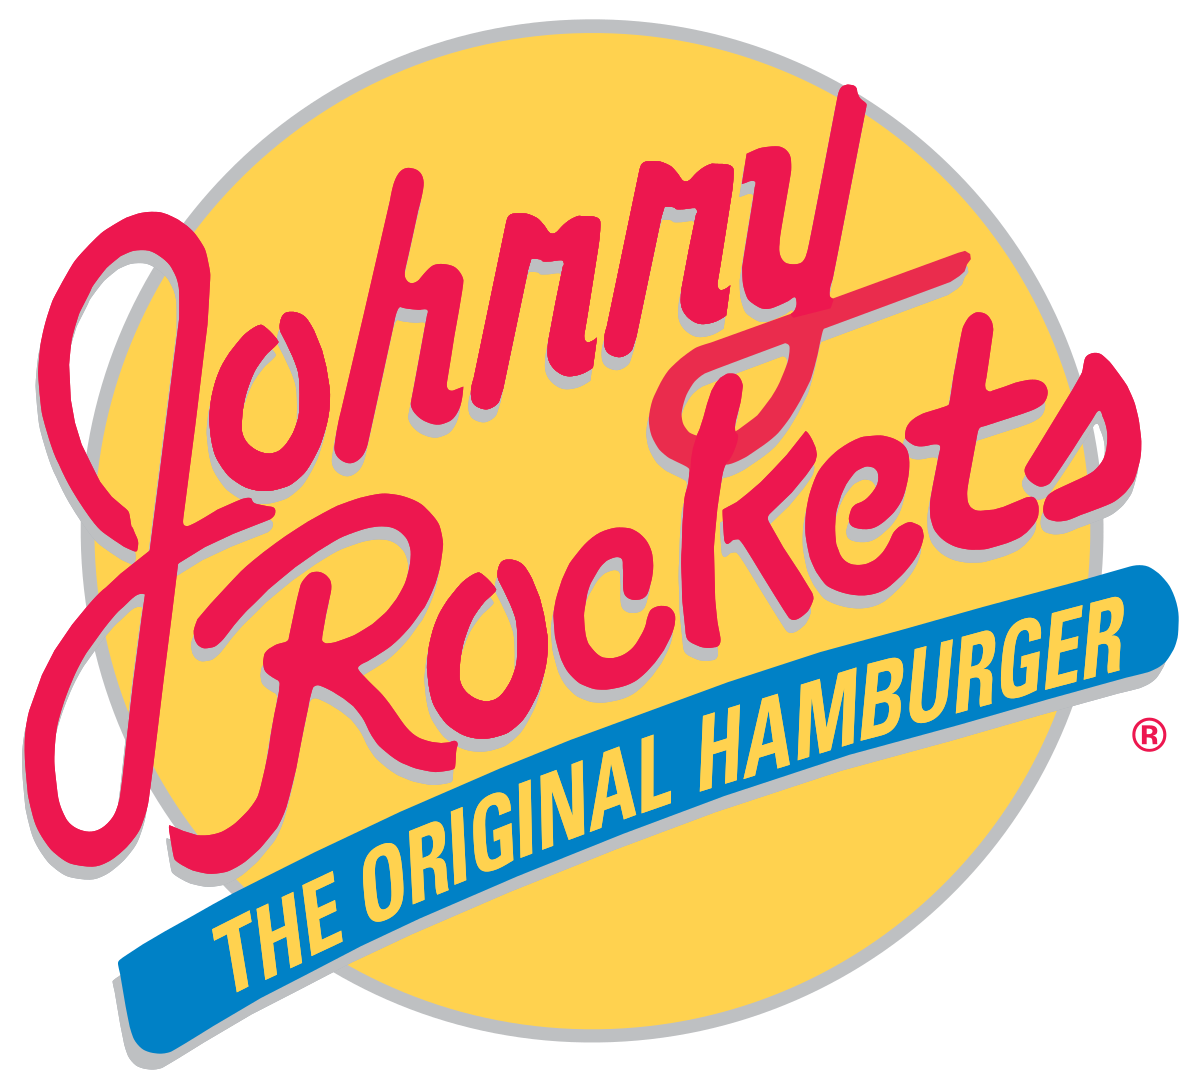 1200px-Johnny_Rockets_logo.svg